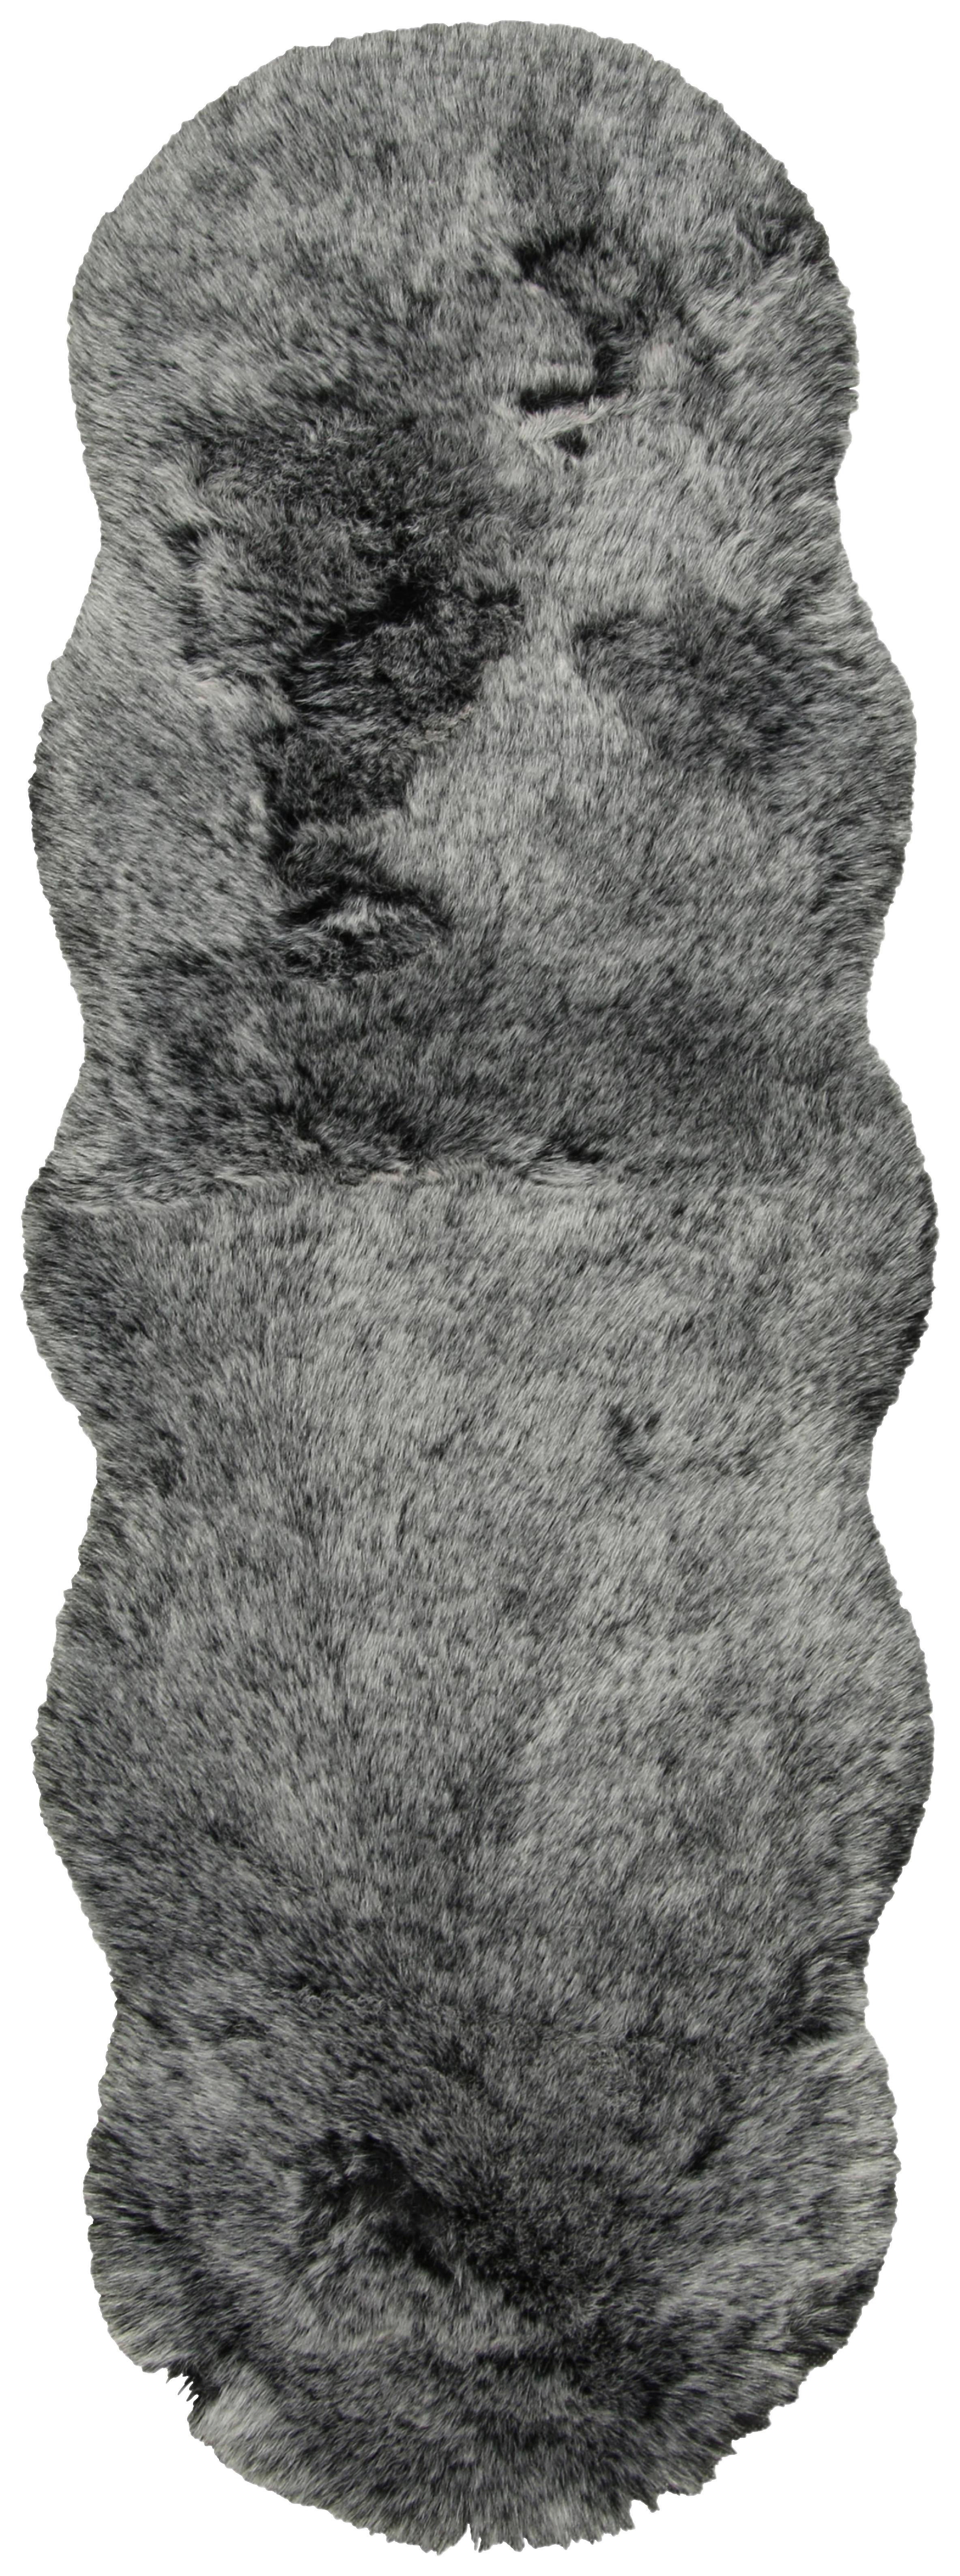 Umelá Kožušina Chrisi 2, 55/160cm, Sivá - sivá, textil/kožušina (55/160cm) - Modern Living